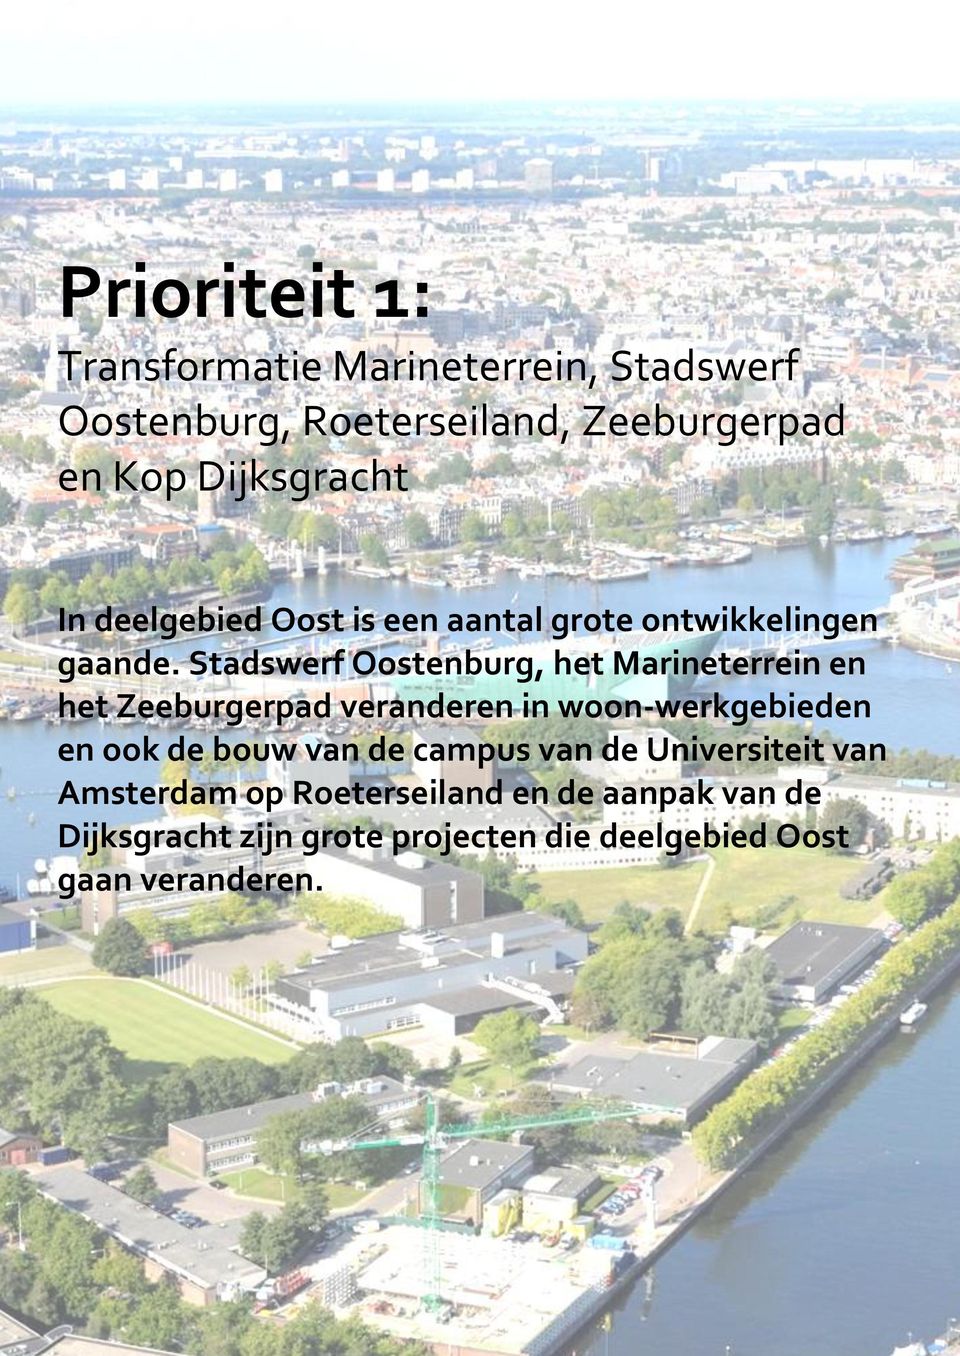 Stadswerf Oostenburg, het Marineterrein en het Zeeburgerpad veranderen in woon-werkgebieden en ook de bouw